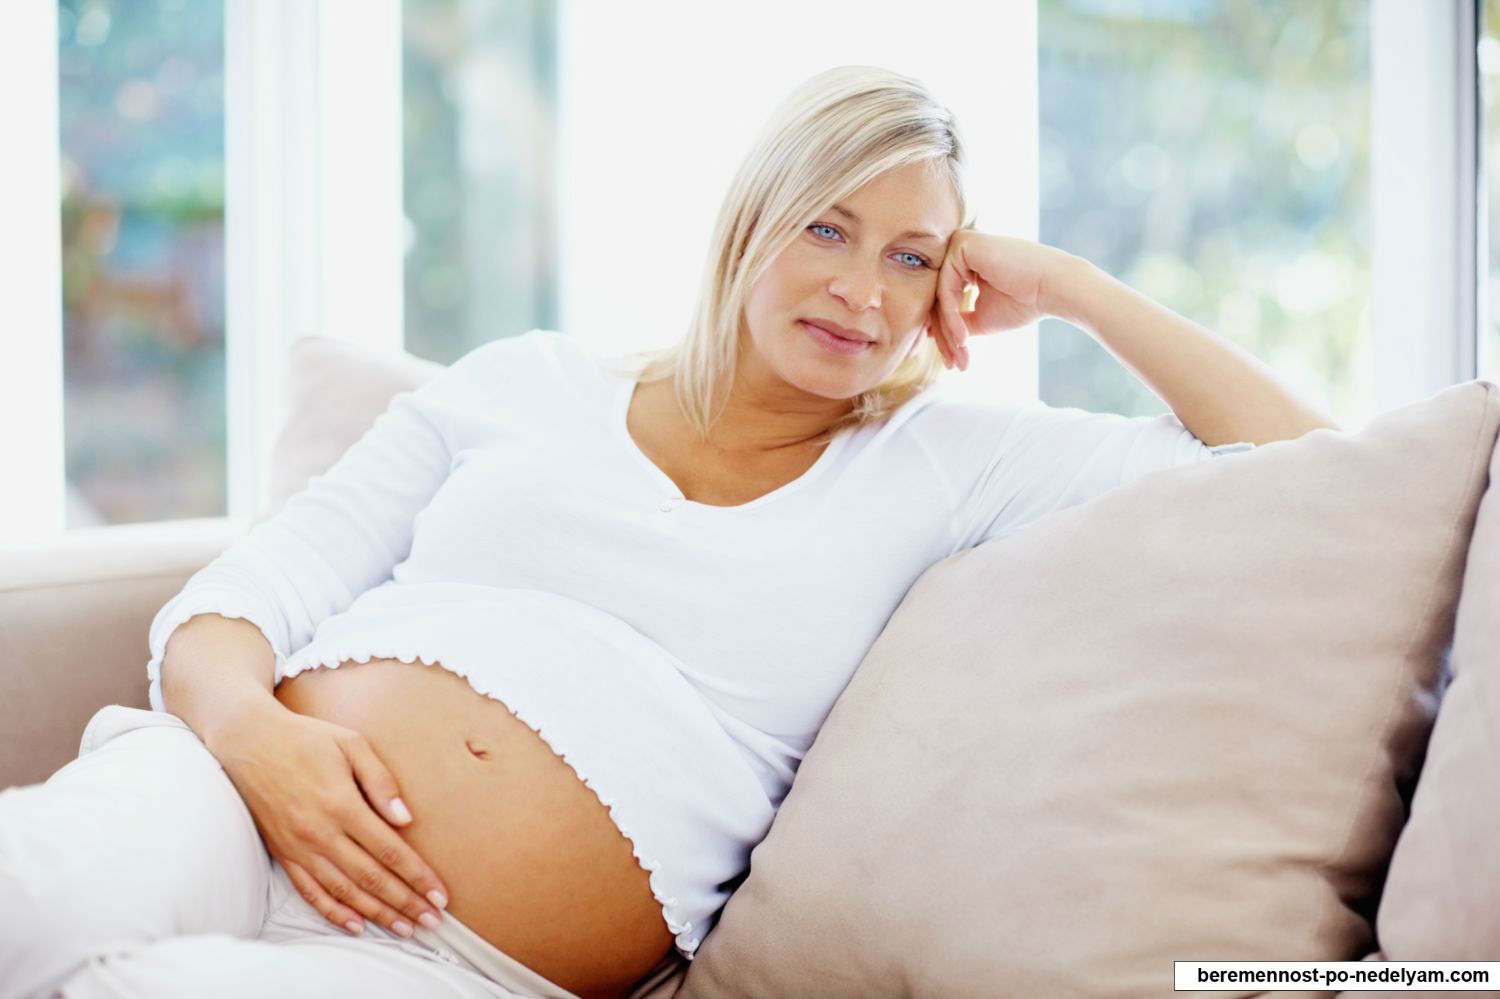 Противопоказания для беременности после 40 лет